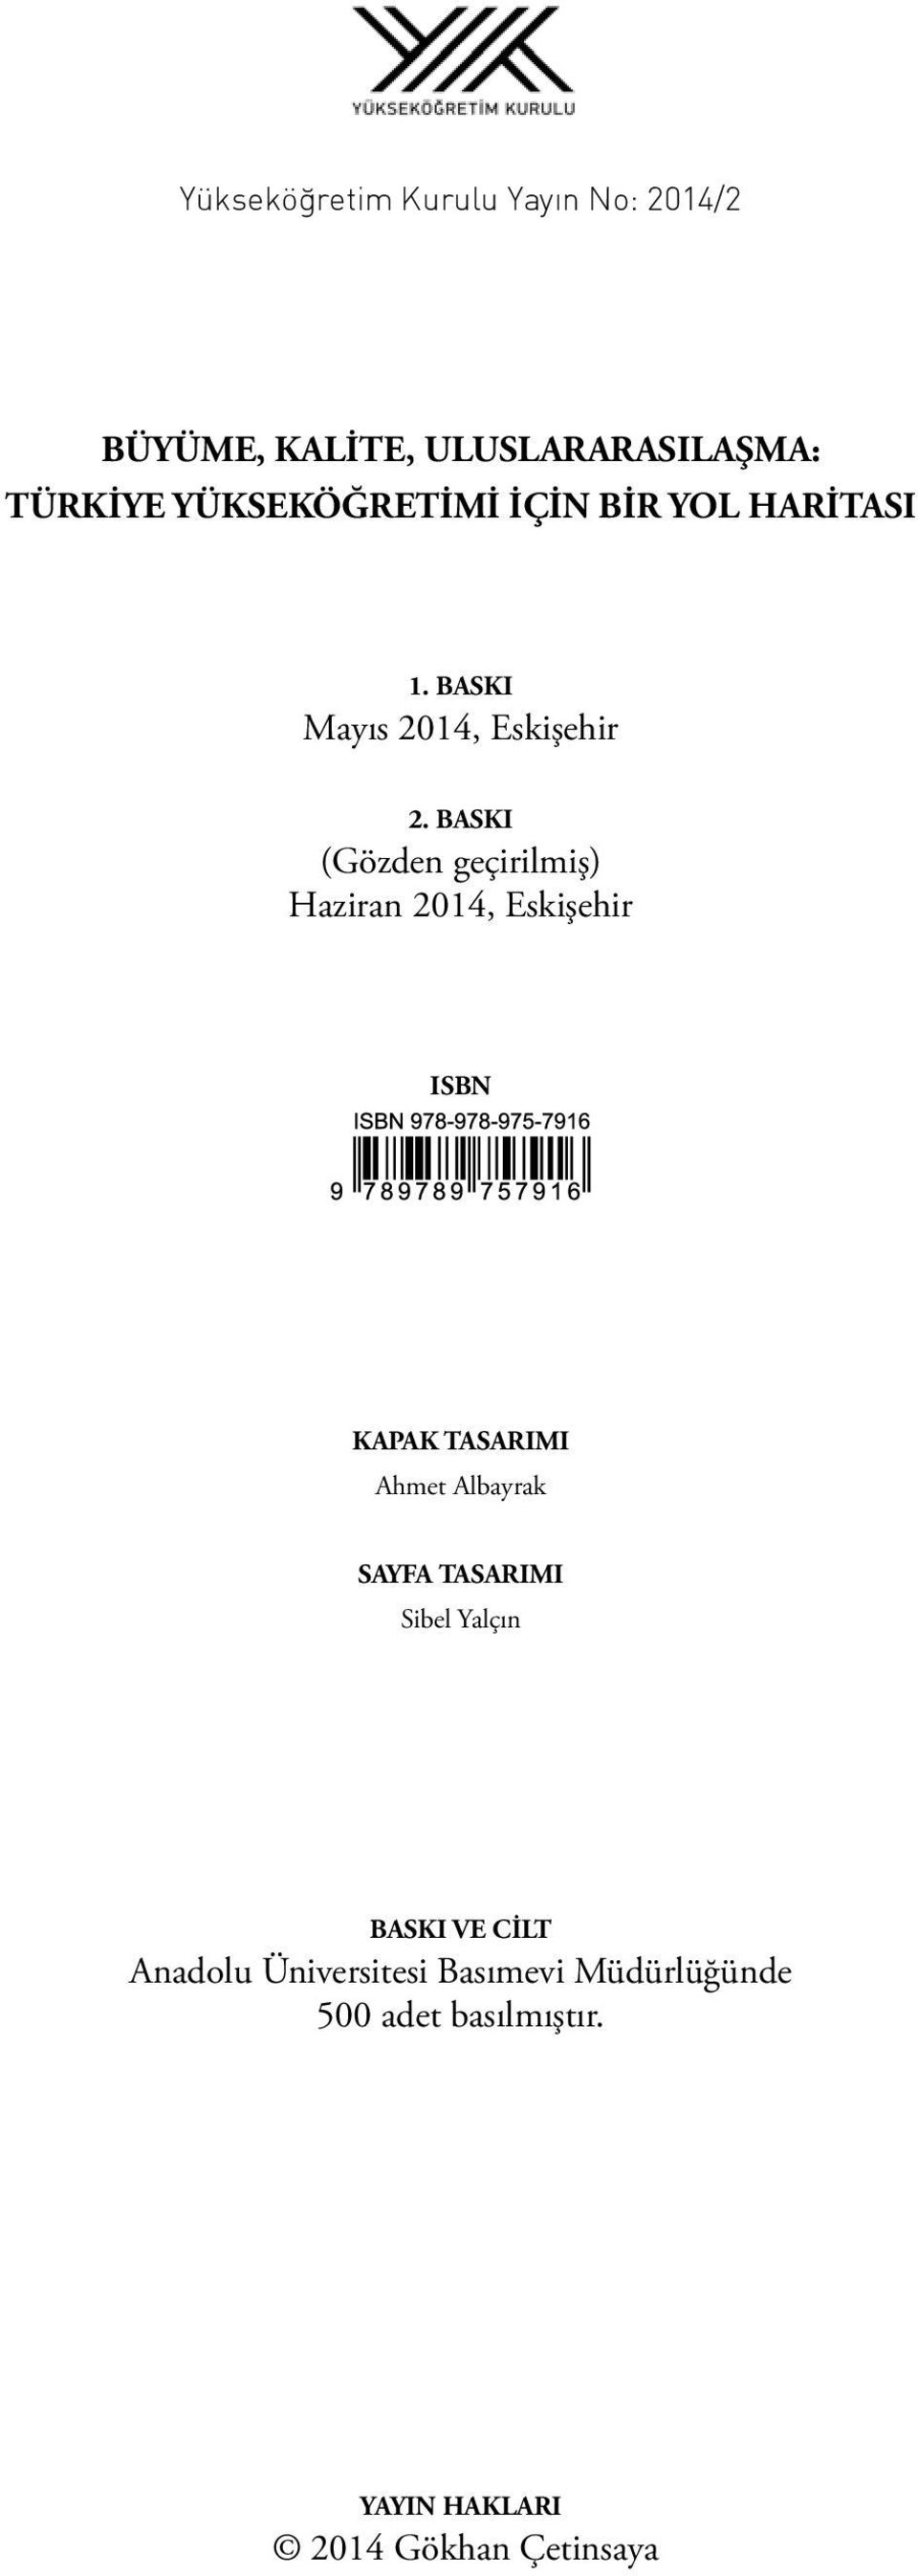 BASKI (Gözden geçirilmiş) Haziran 2014, Eskişehir ISBN KAPAK TASARIMI Ahmet Albayrak SAYFA